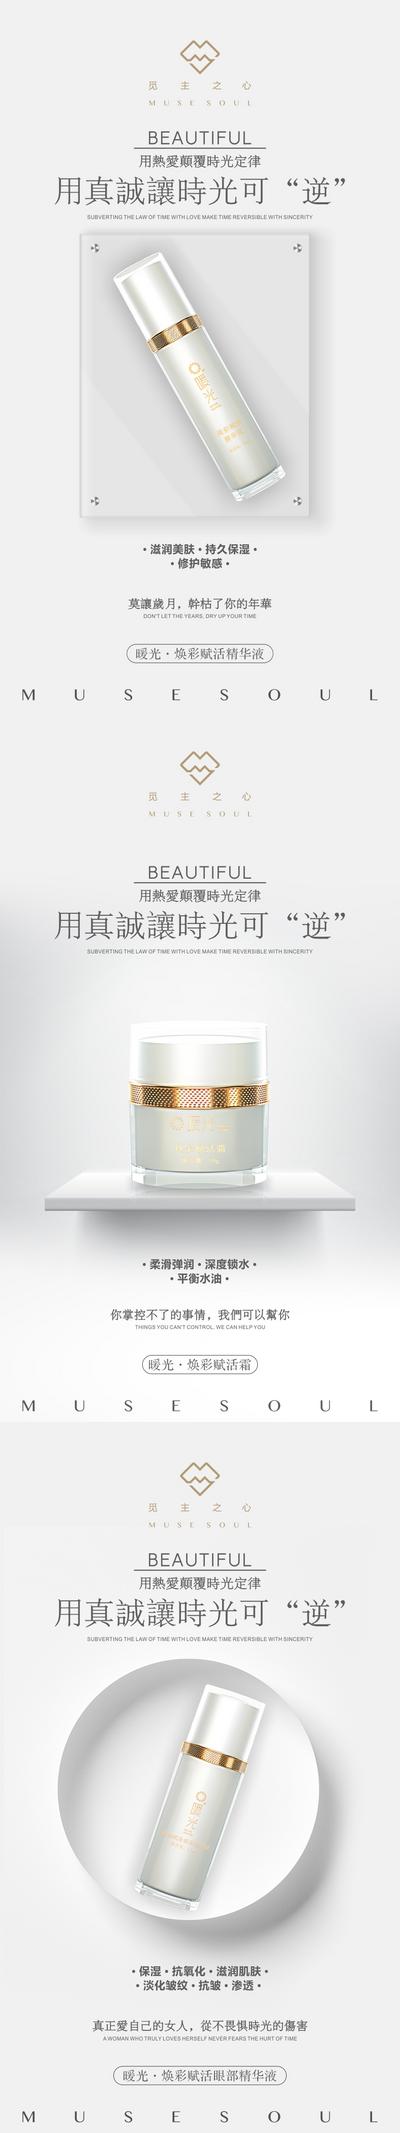 南门网 海报 医美 护肤品 化妆品 微商 推广 宣传